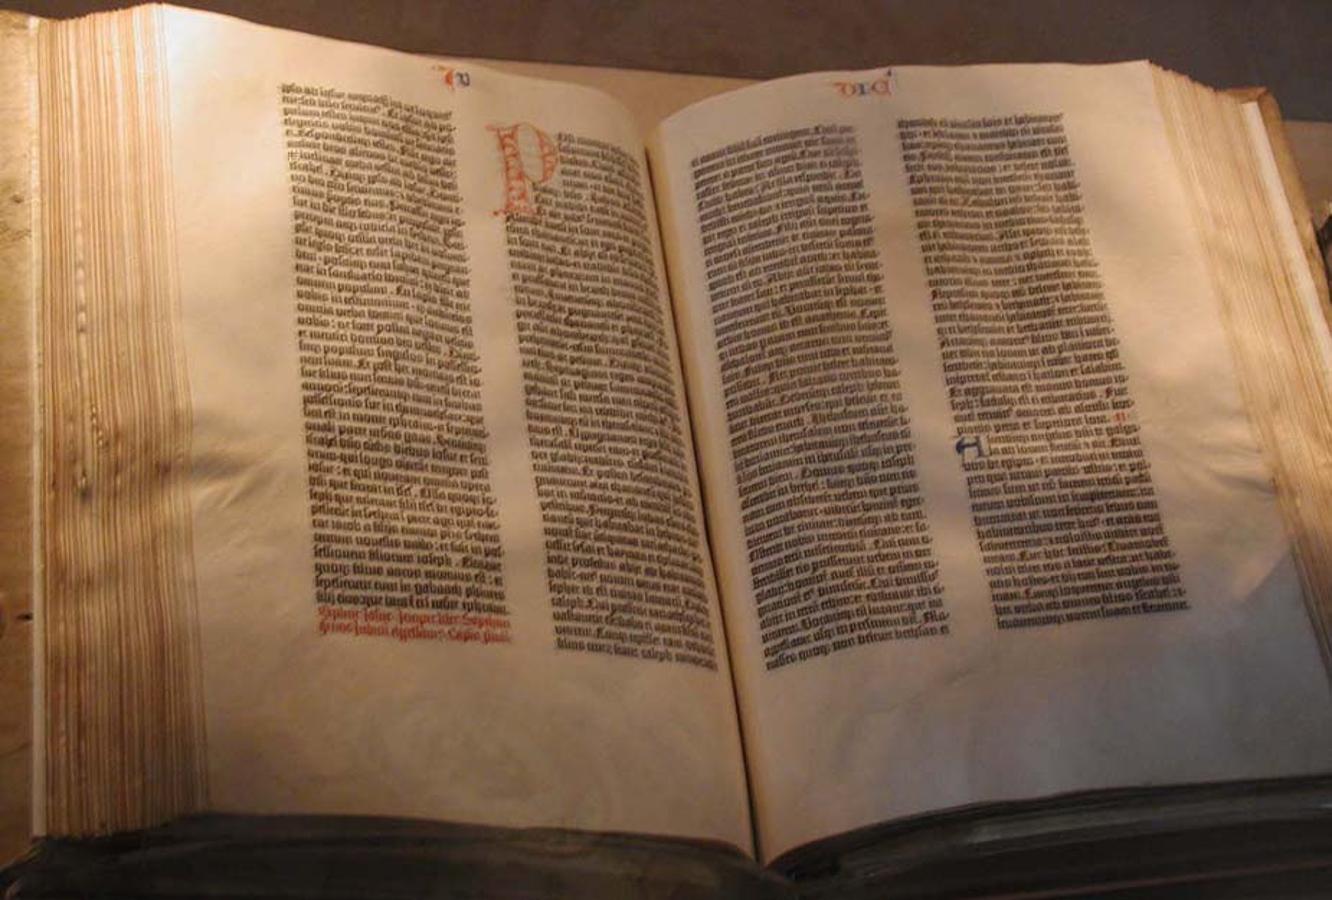 La Biblia de Guttemberg. Cada hoja del primer libro impreso cuesta millones. Johans Gutenberg lanzó el primer incunable alrededor de 1455. Las primeras impresiones de la historia eran religiosas, la última hoja de Salmos la subastó Christie's y su valor ascendió a los 65.000 dólares (más de 50.000 euros)